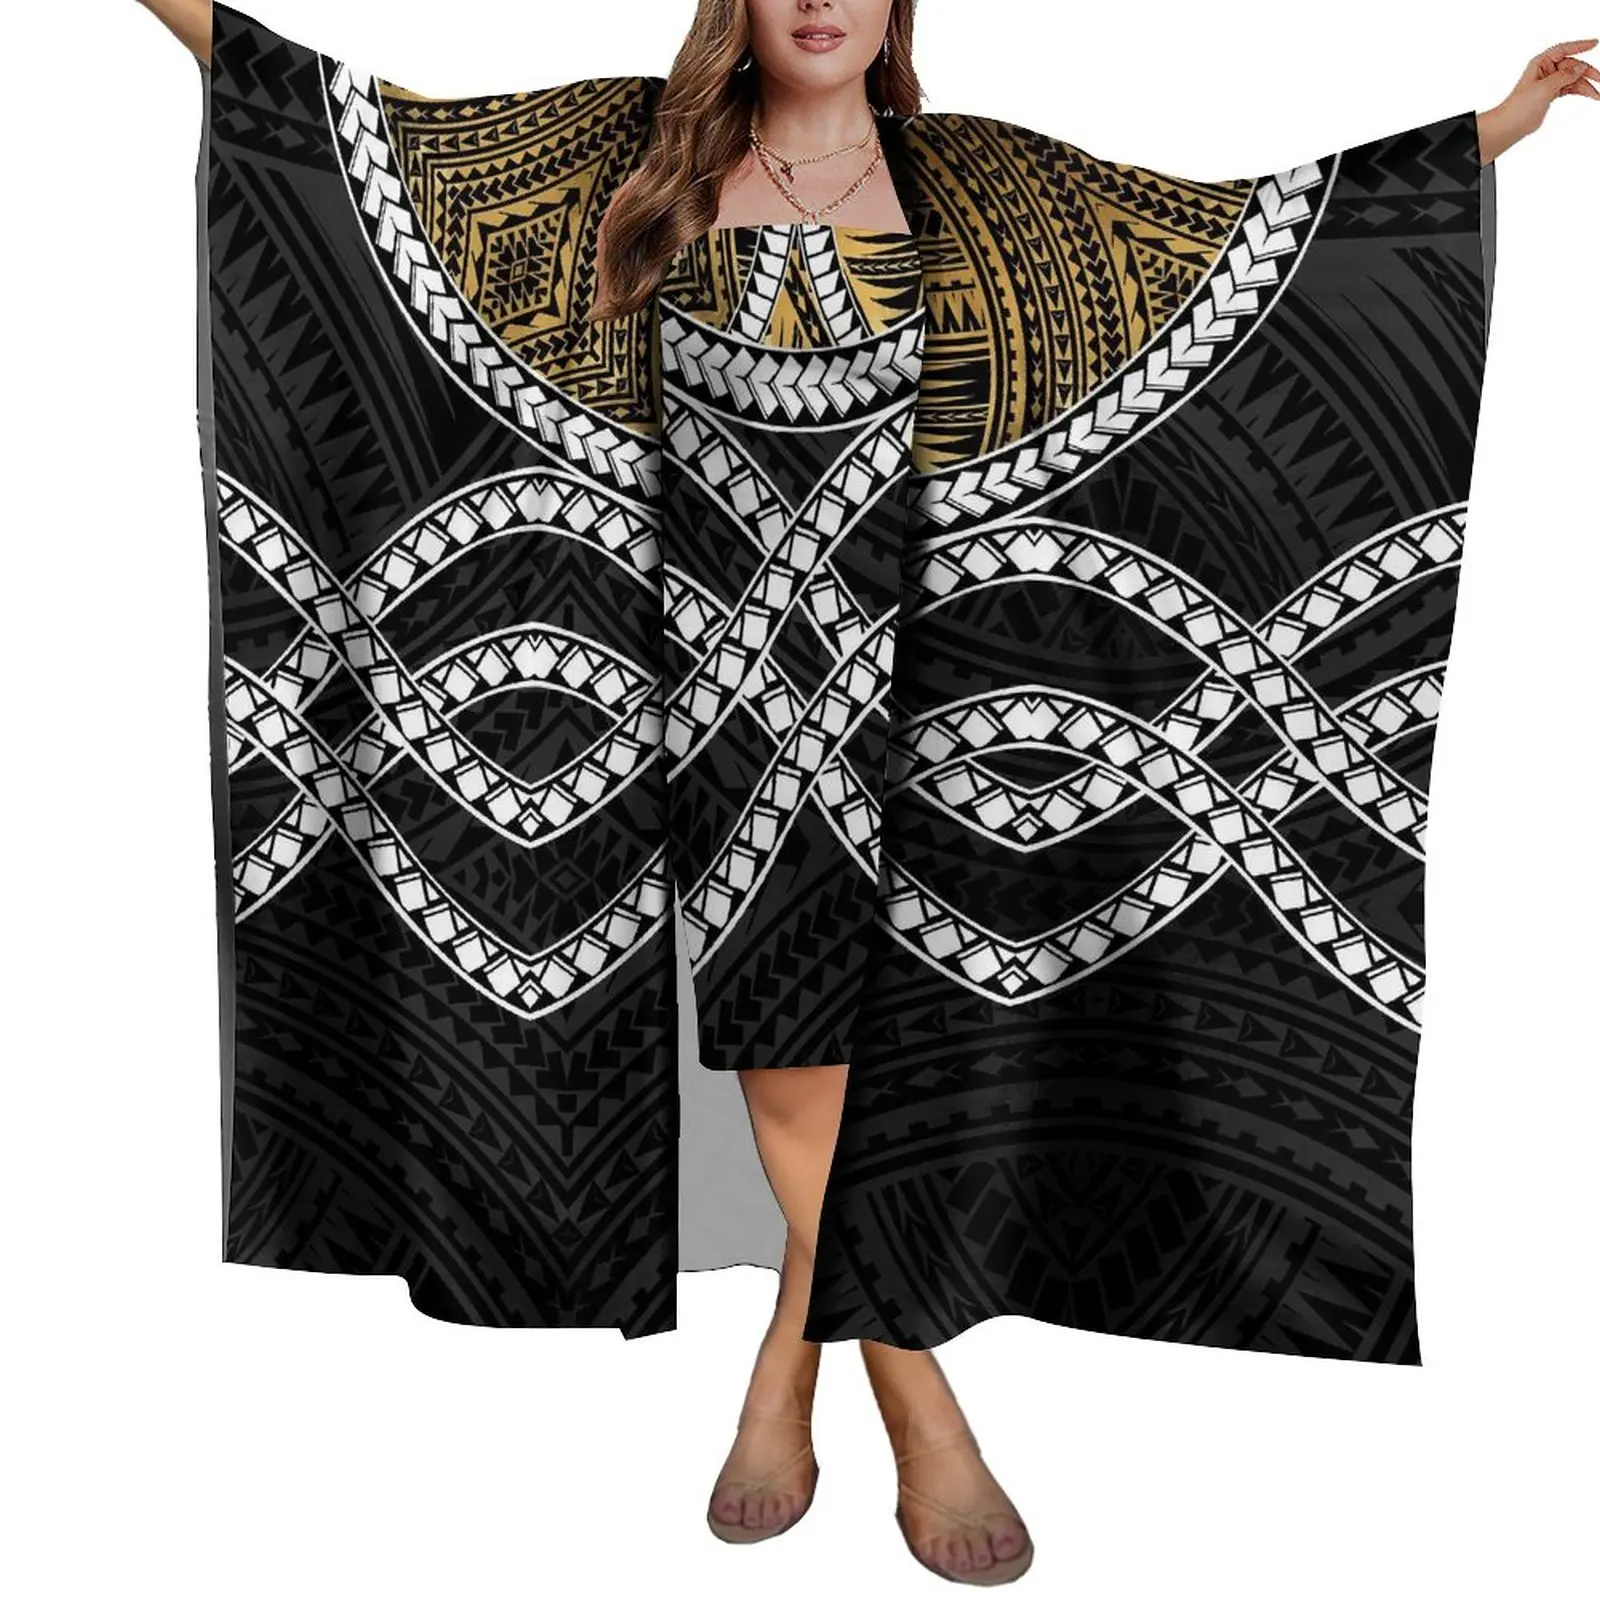 1 MOQ Индивидуальный Дизайн HD Печать Полинезийский Племенной Женский Пляжный Солнцезащитный Крем Шаль Пляжный Саронг Шарф Леди Легкий Комплект Платья Саронг 2